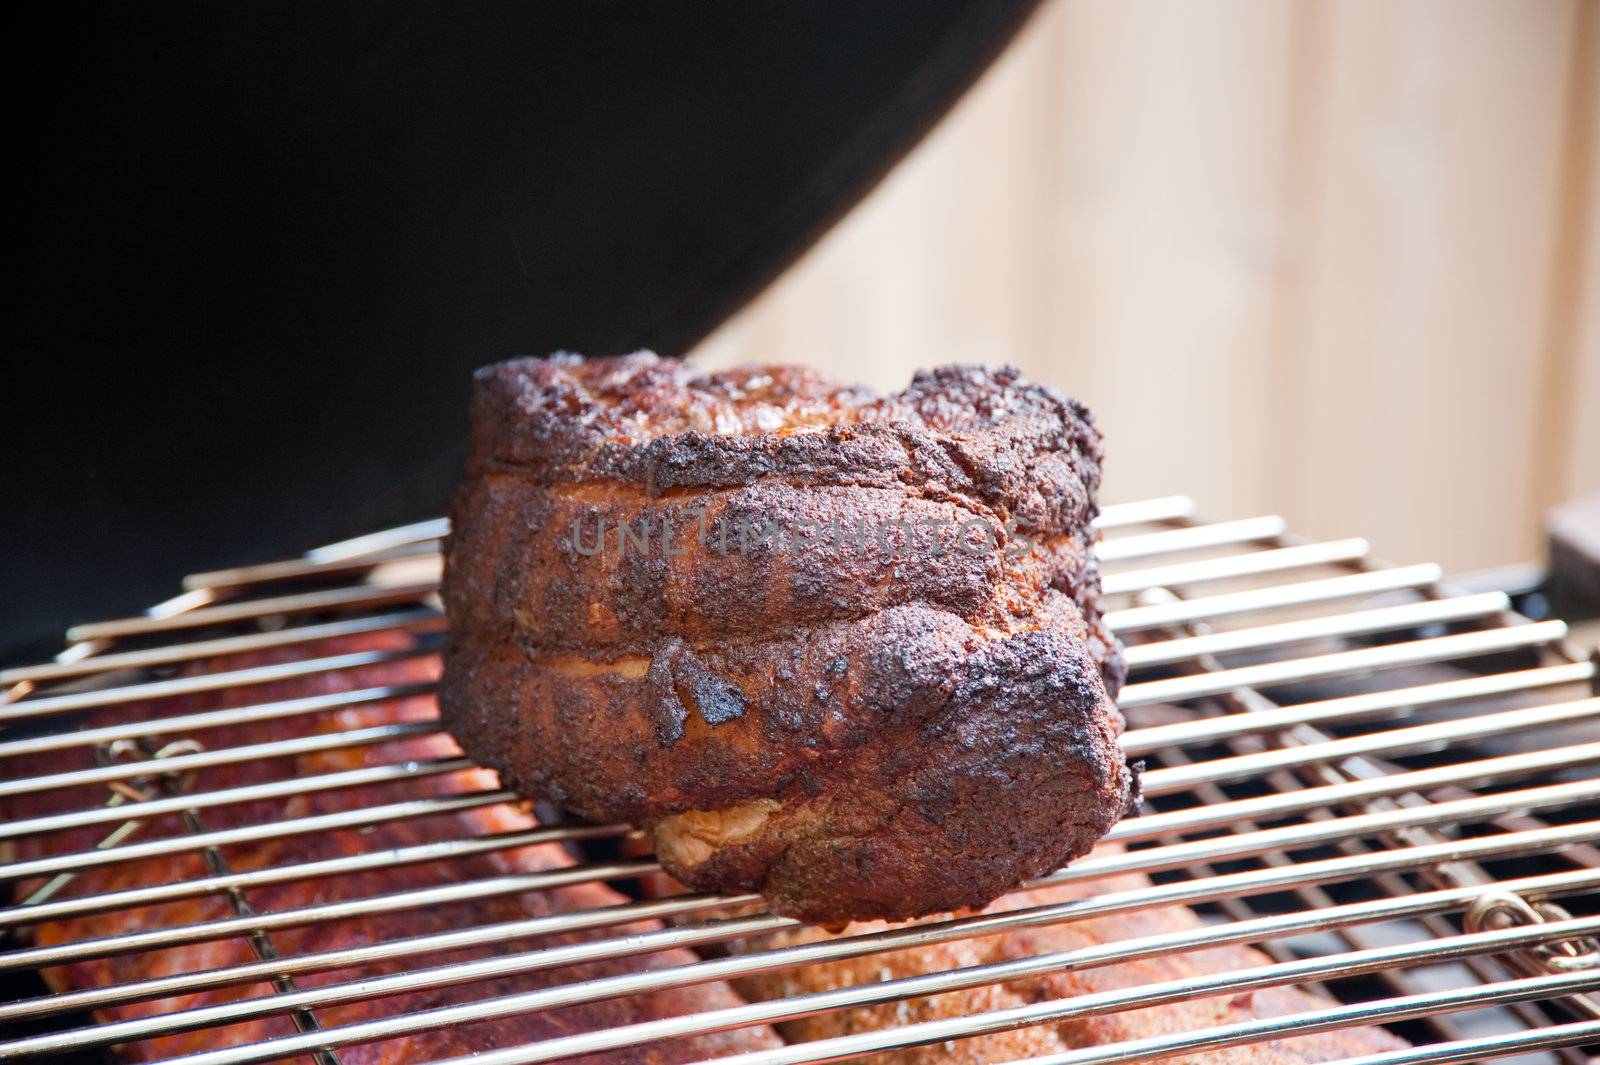 Pork shoulder on a grill